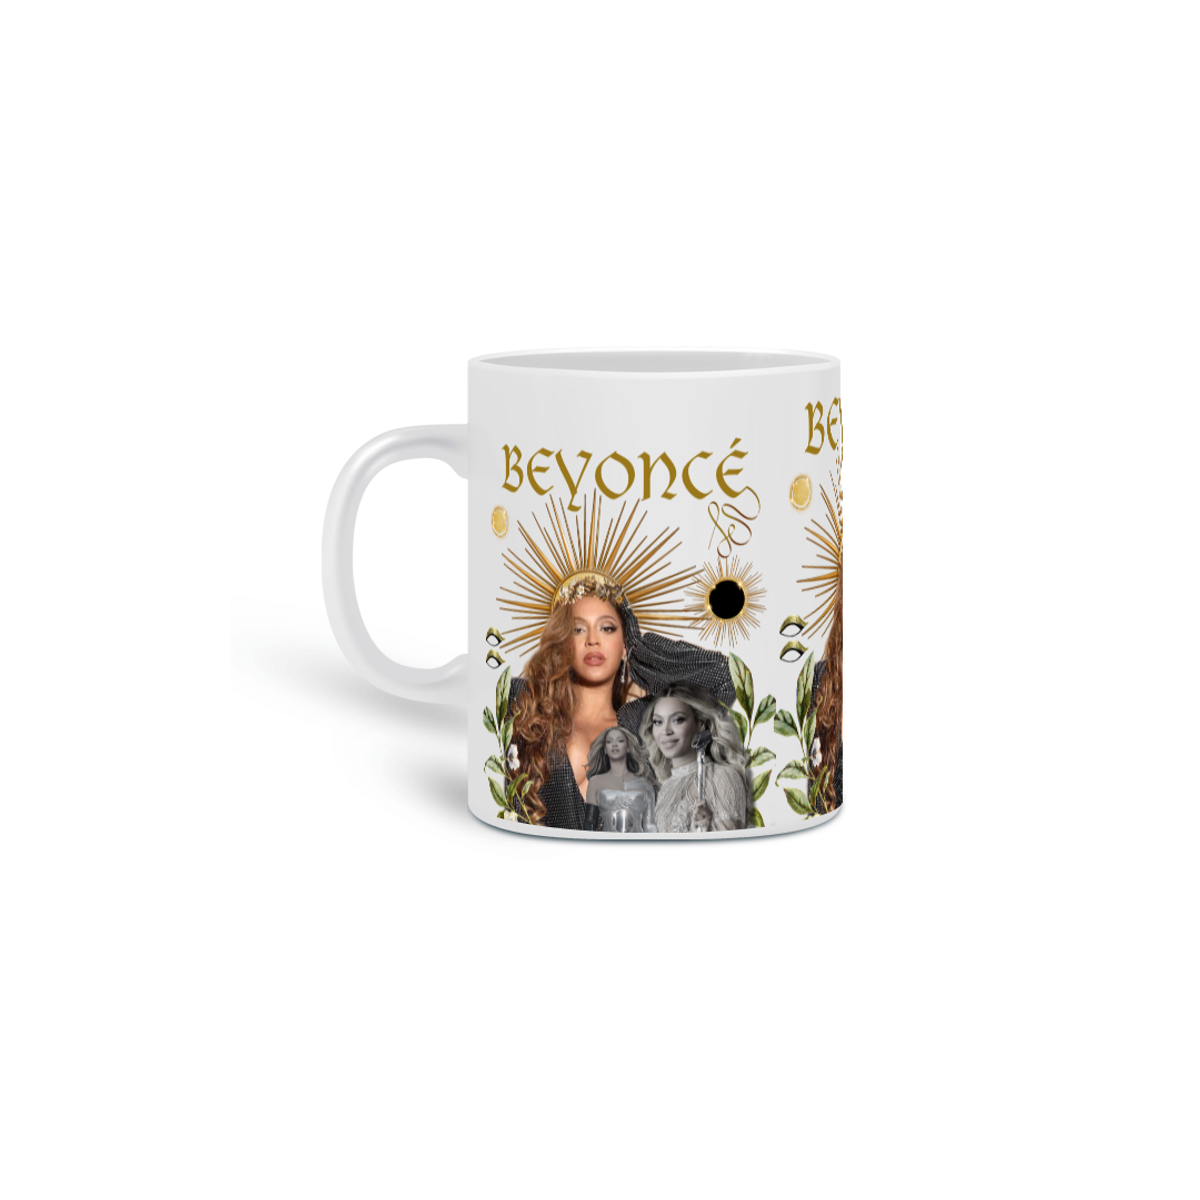 Nome do produto: Beyoncé